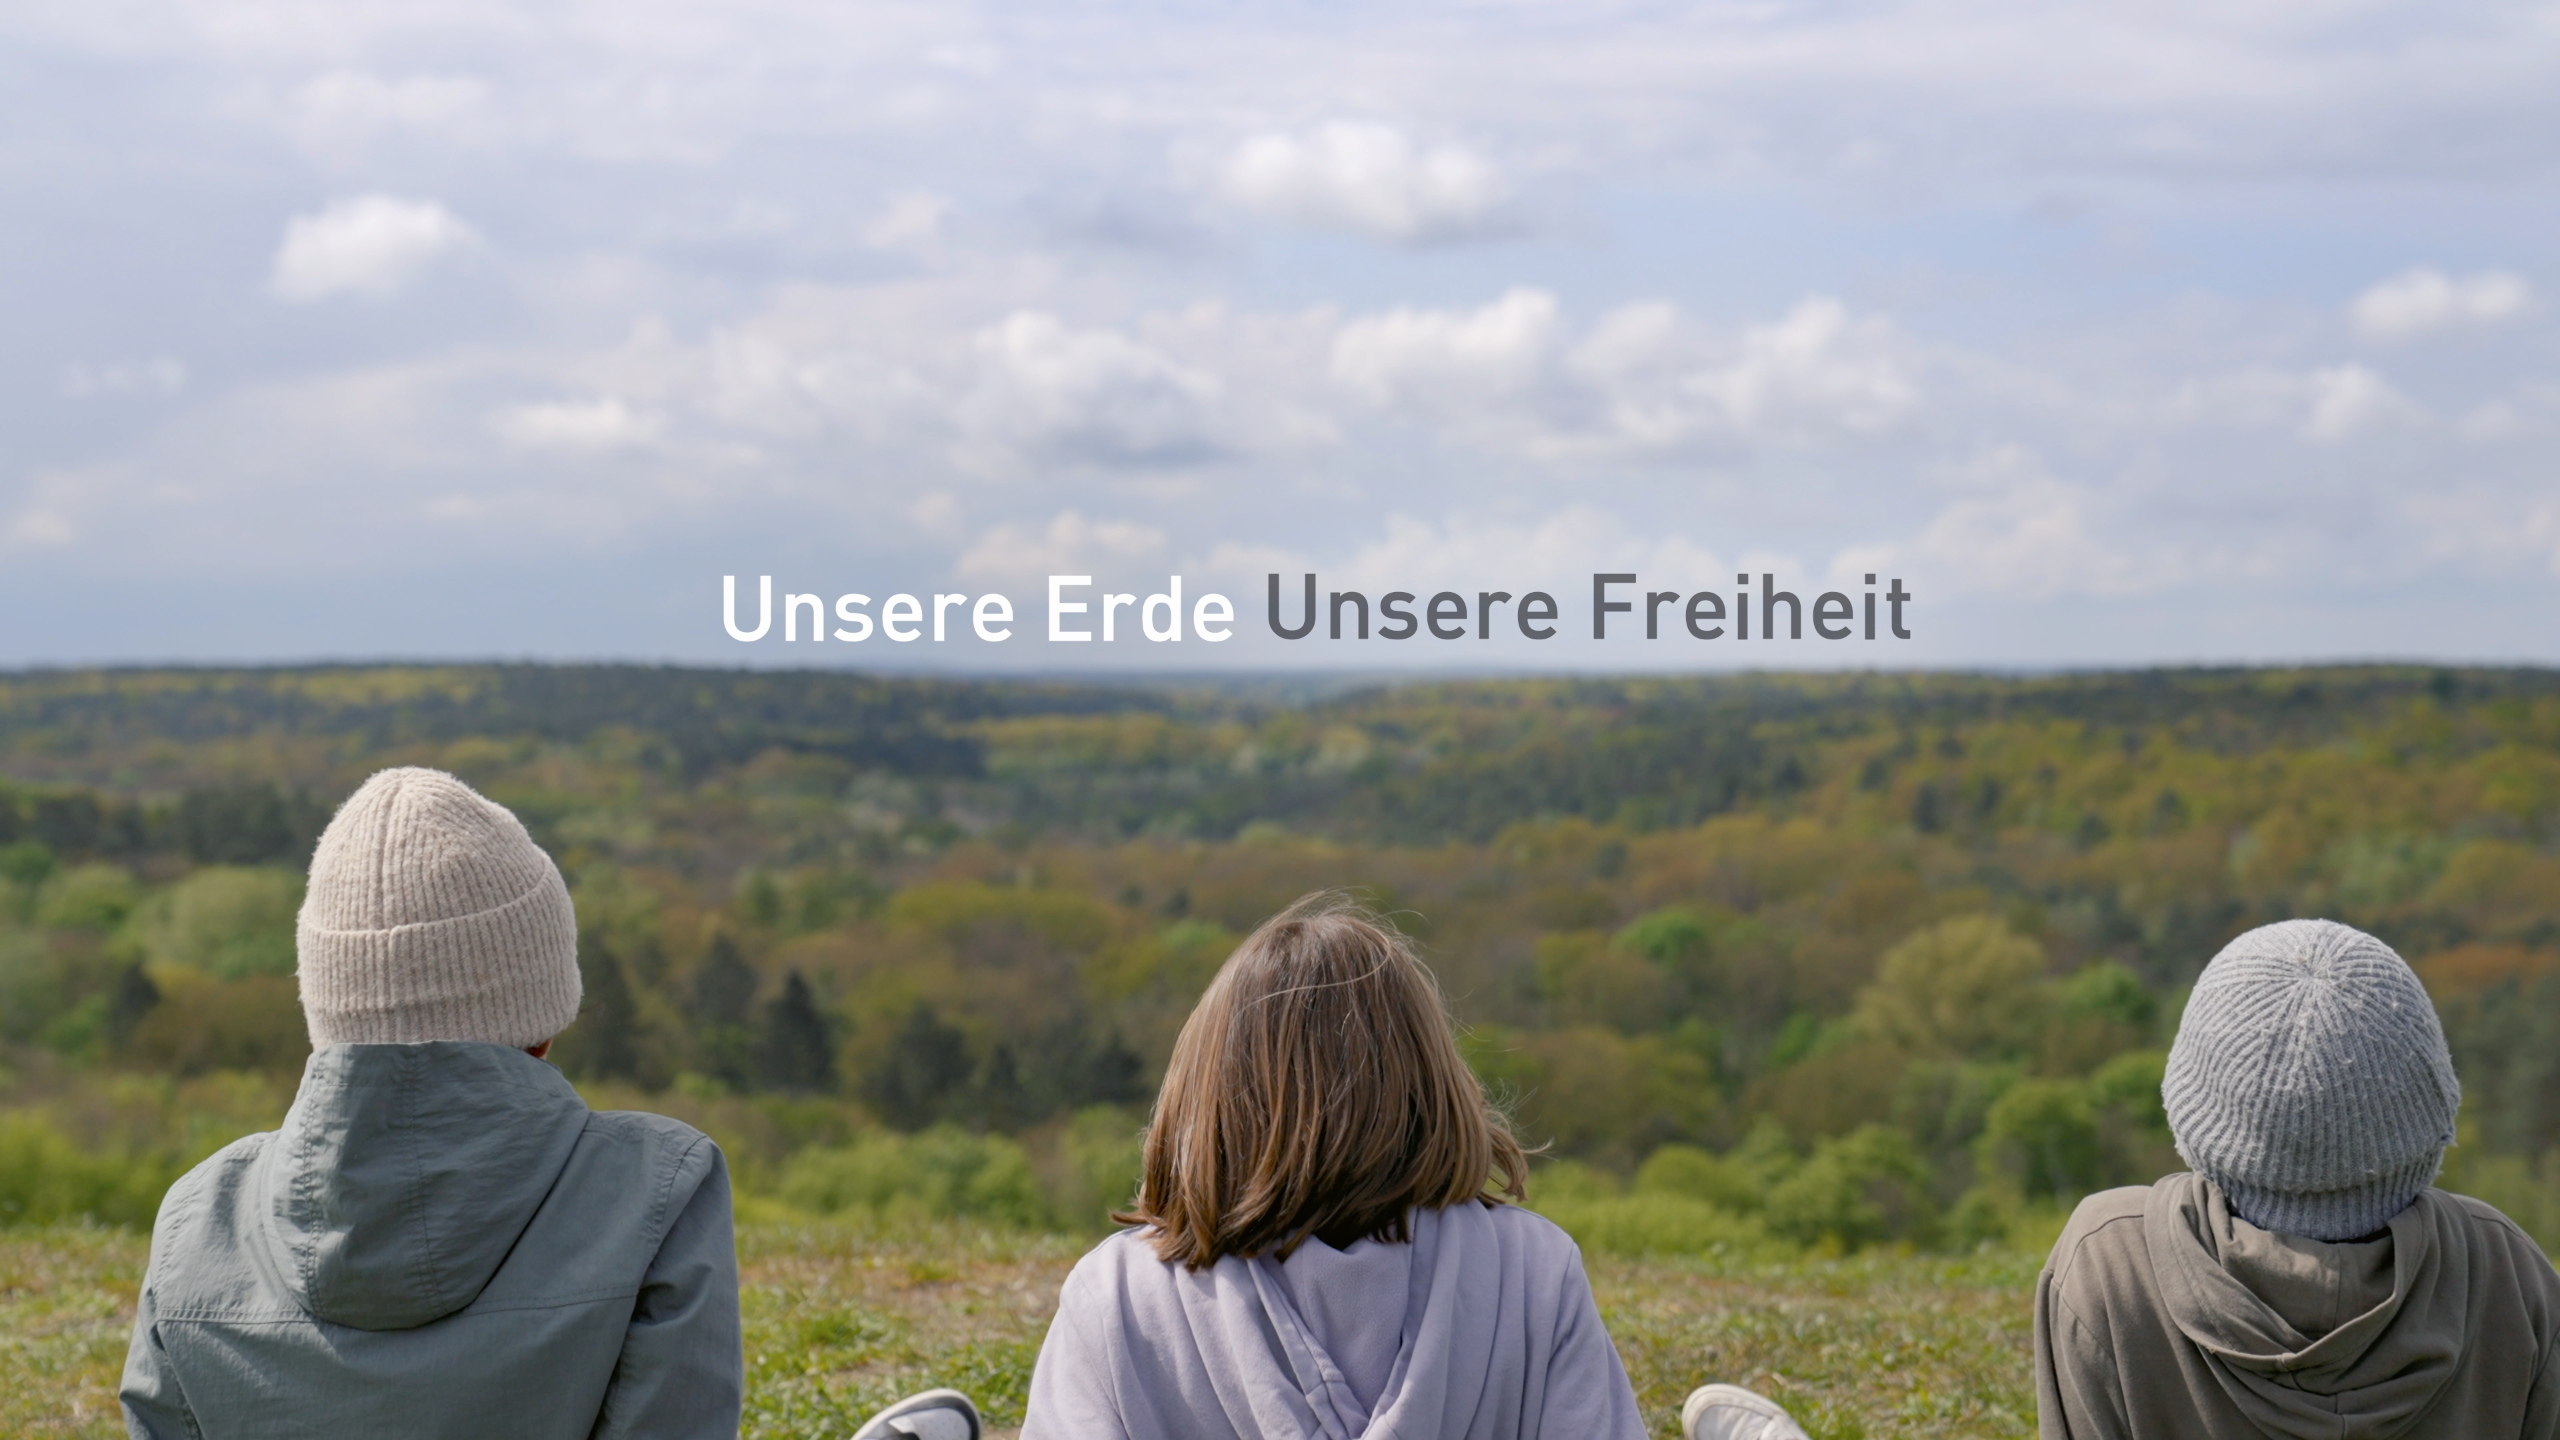 Drei Kinder sitzen auf einem Hügel und schauen über einen Wald. In der Mitte steht der Titel des Films, „Unsere Erde, Unsere Freiheit“.